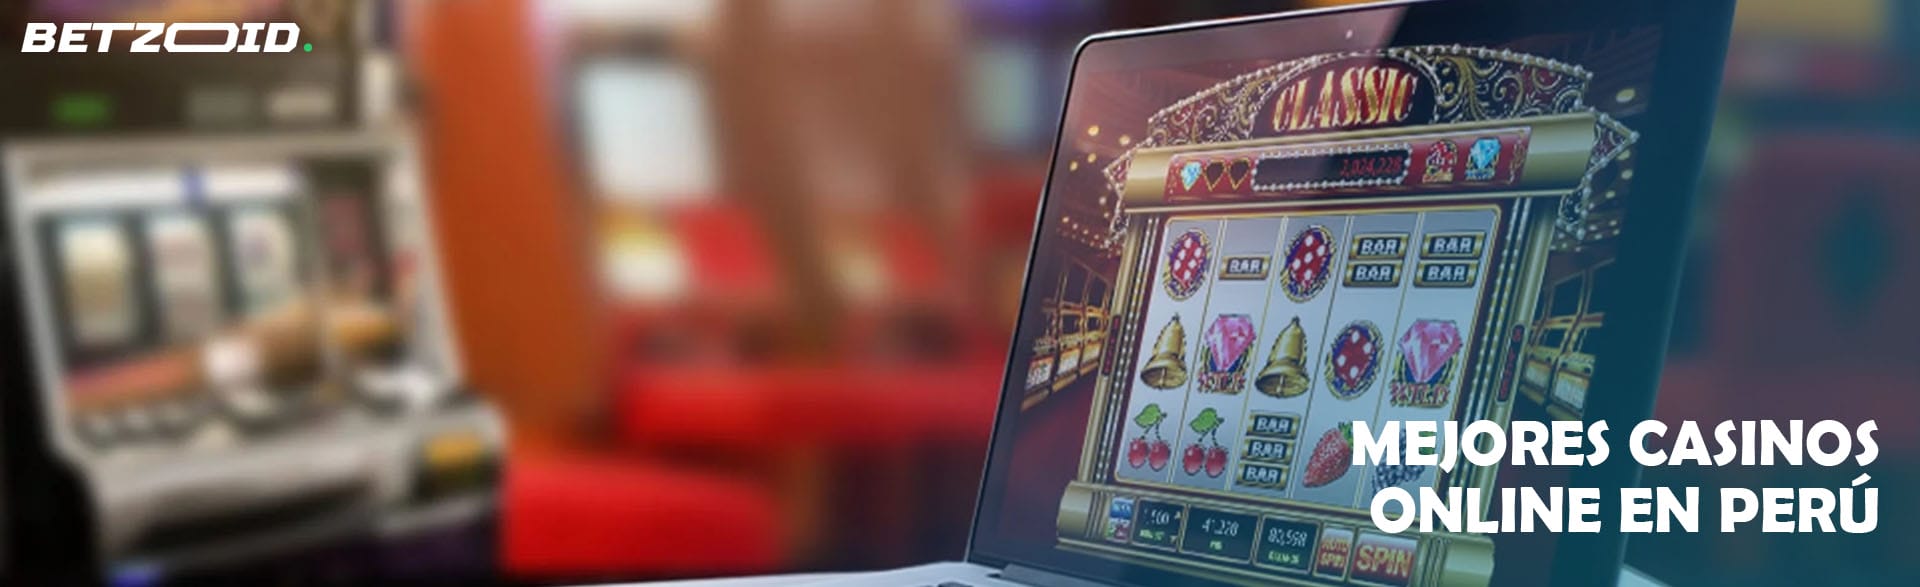 Mejores Casinos Online en Perú.